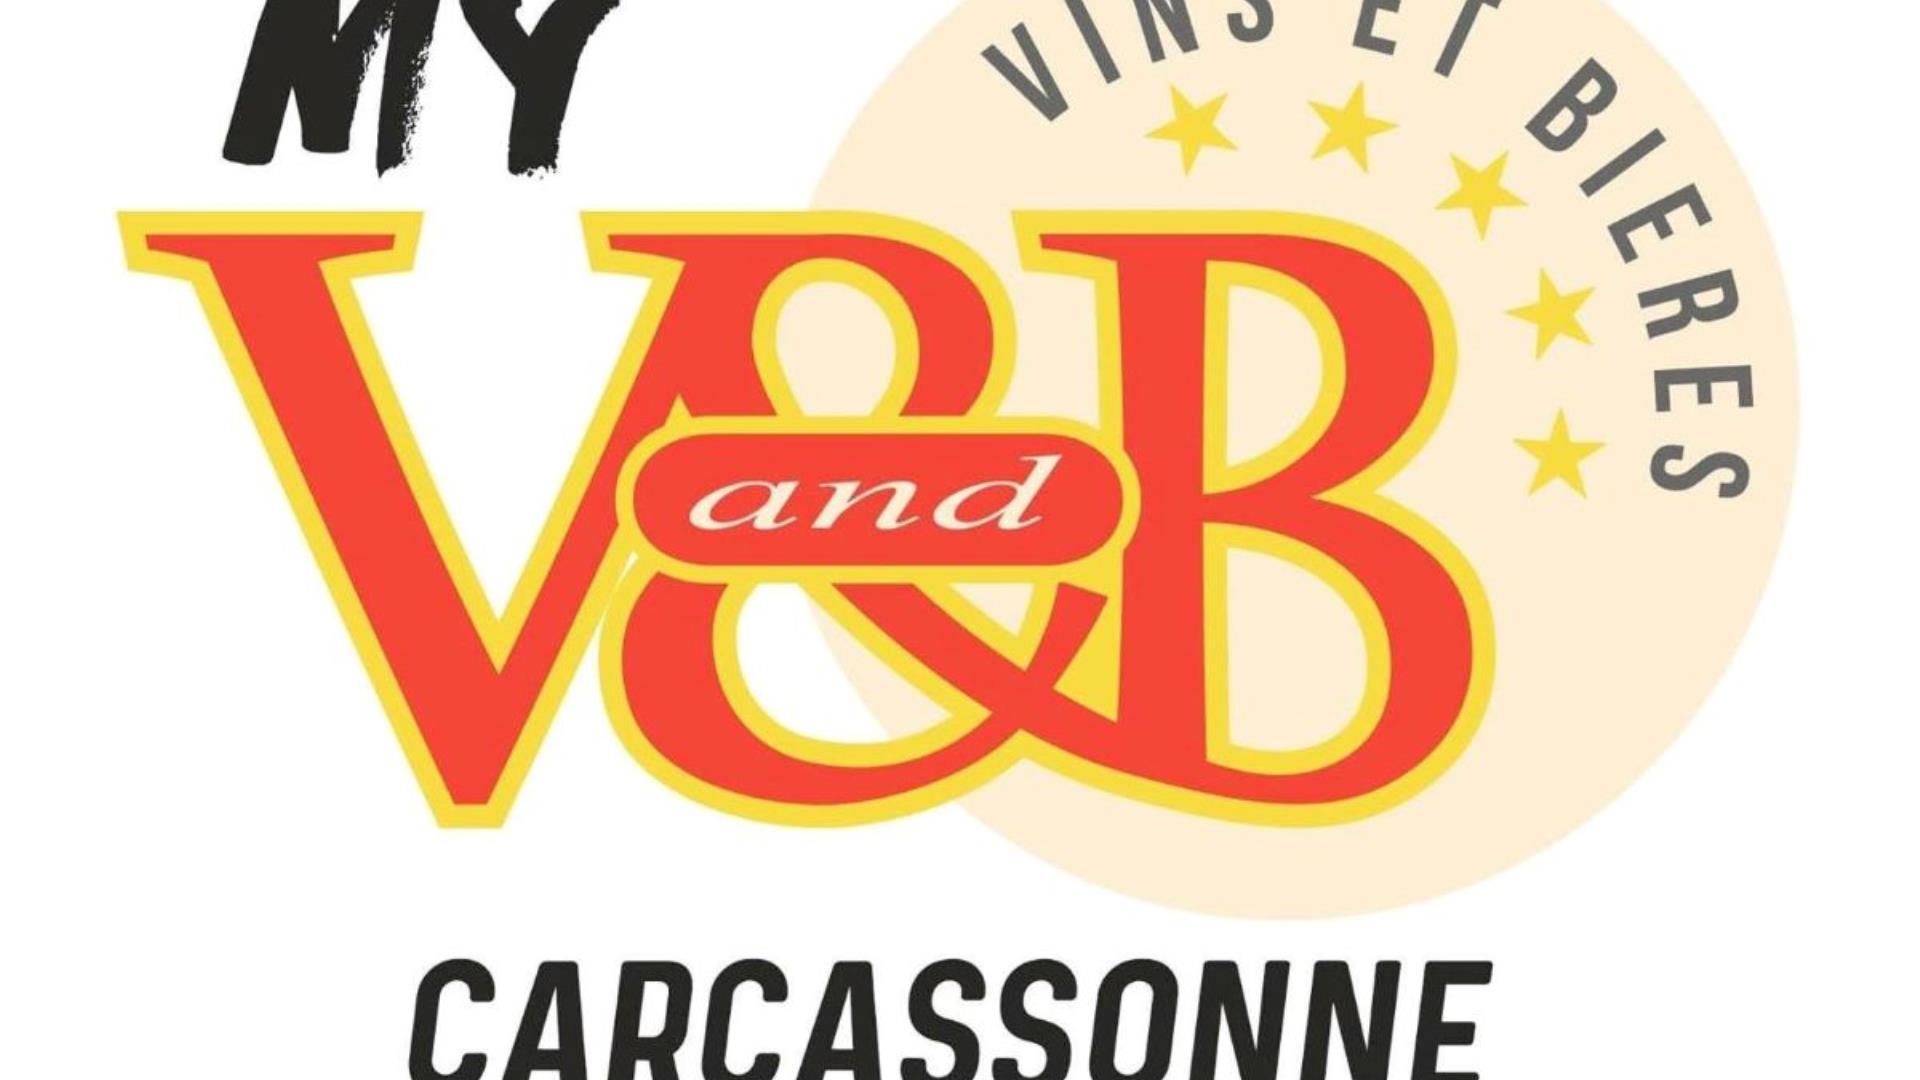 V and B carcassonne